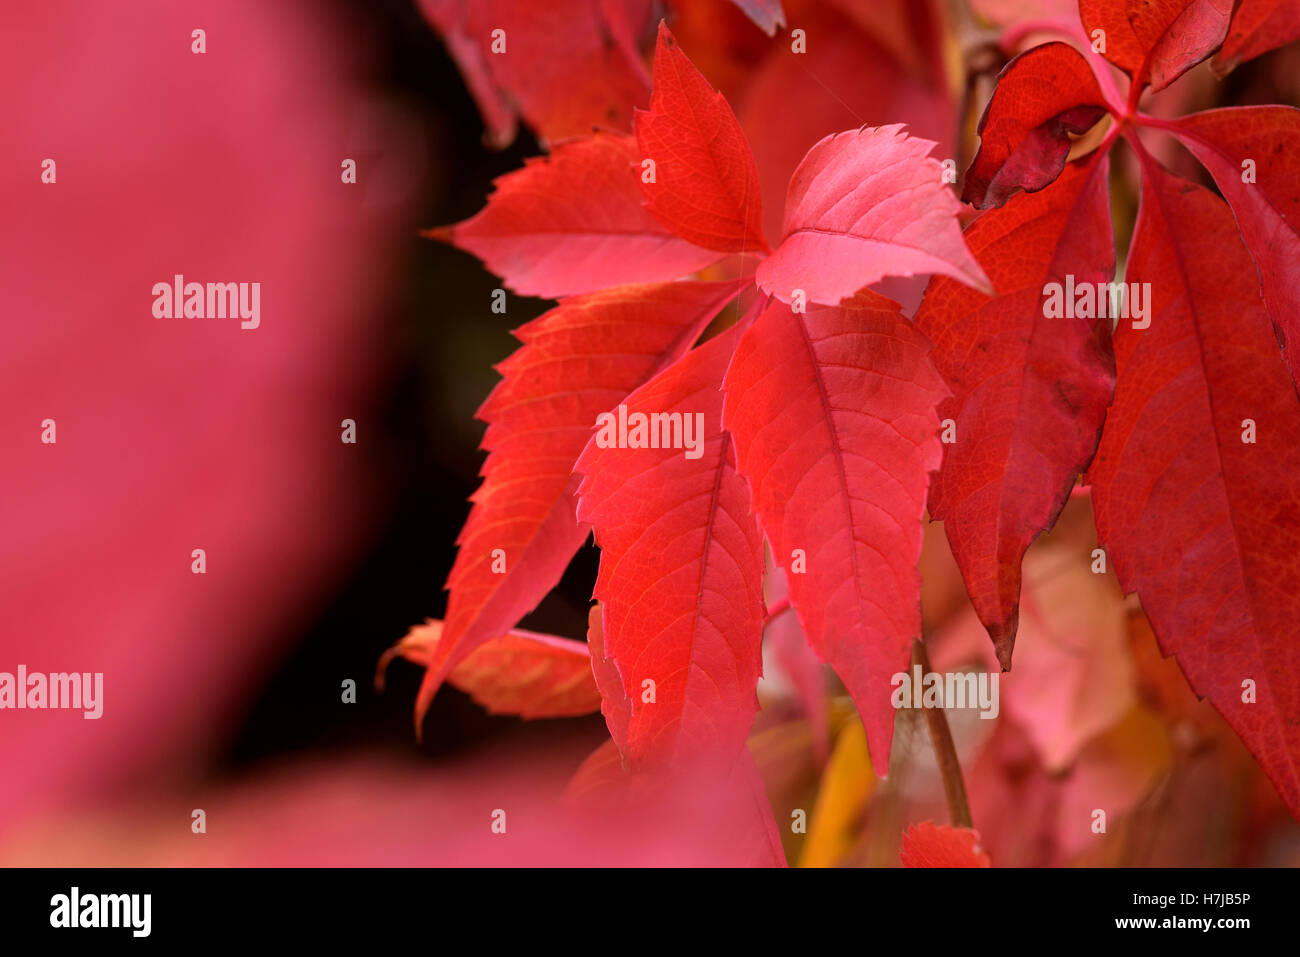 Parthenocissus Quinquefolia, vitis, Virginia Creeper, red autumn colour. Stock Photo